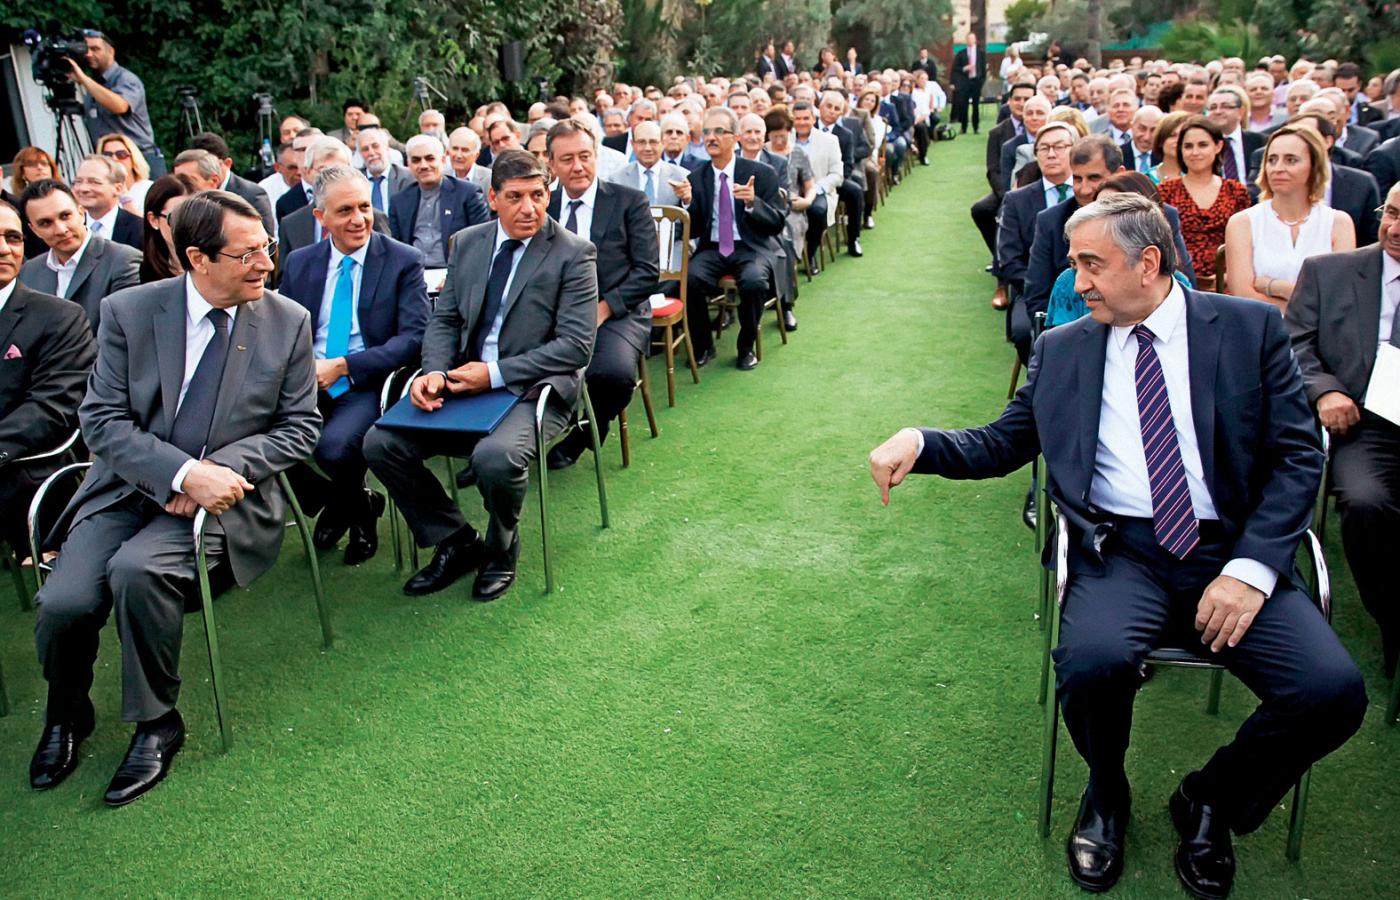 Na pierwszym planie z lewej prezydent południa Nikos Anastasiadis, z prawej prezydent północy Mustafa Akıncı. Są ziomkami z jednego pokolenia i obaj chcą tego samego.